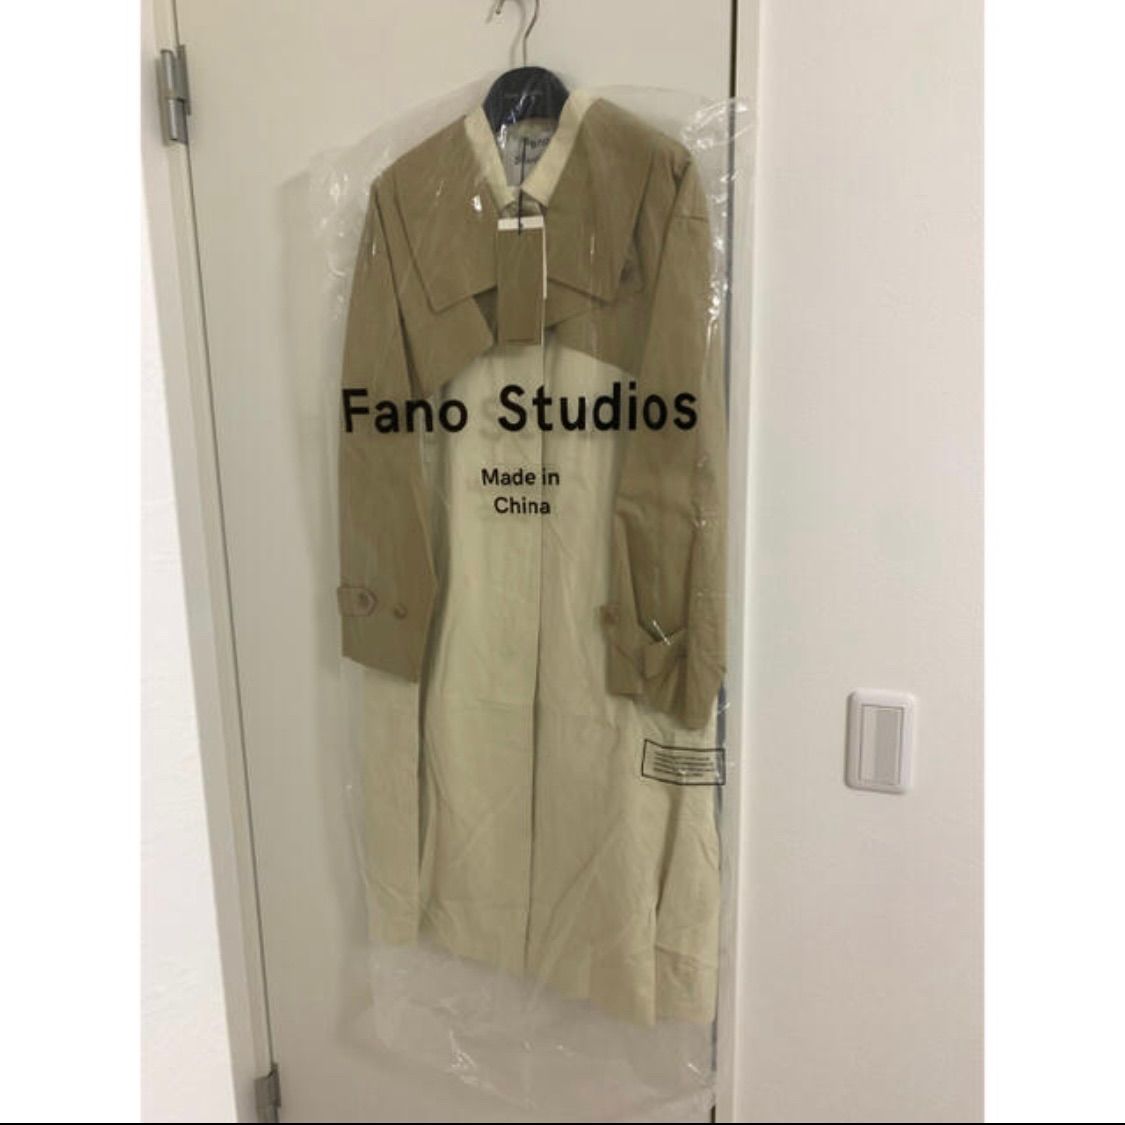 fano studios ツーピースロングトレンチコート - ろみの洋服屋さん